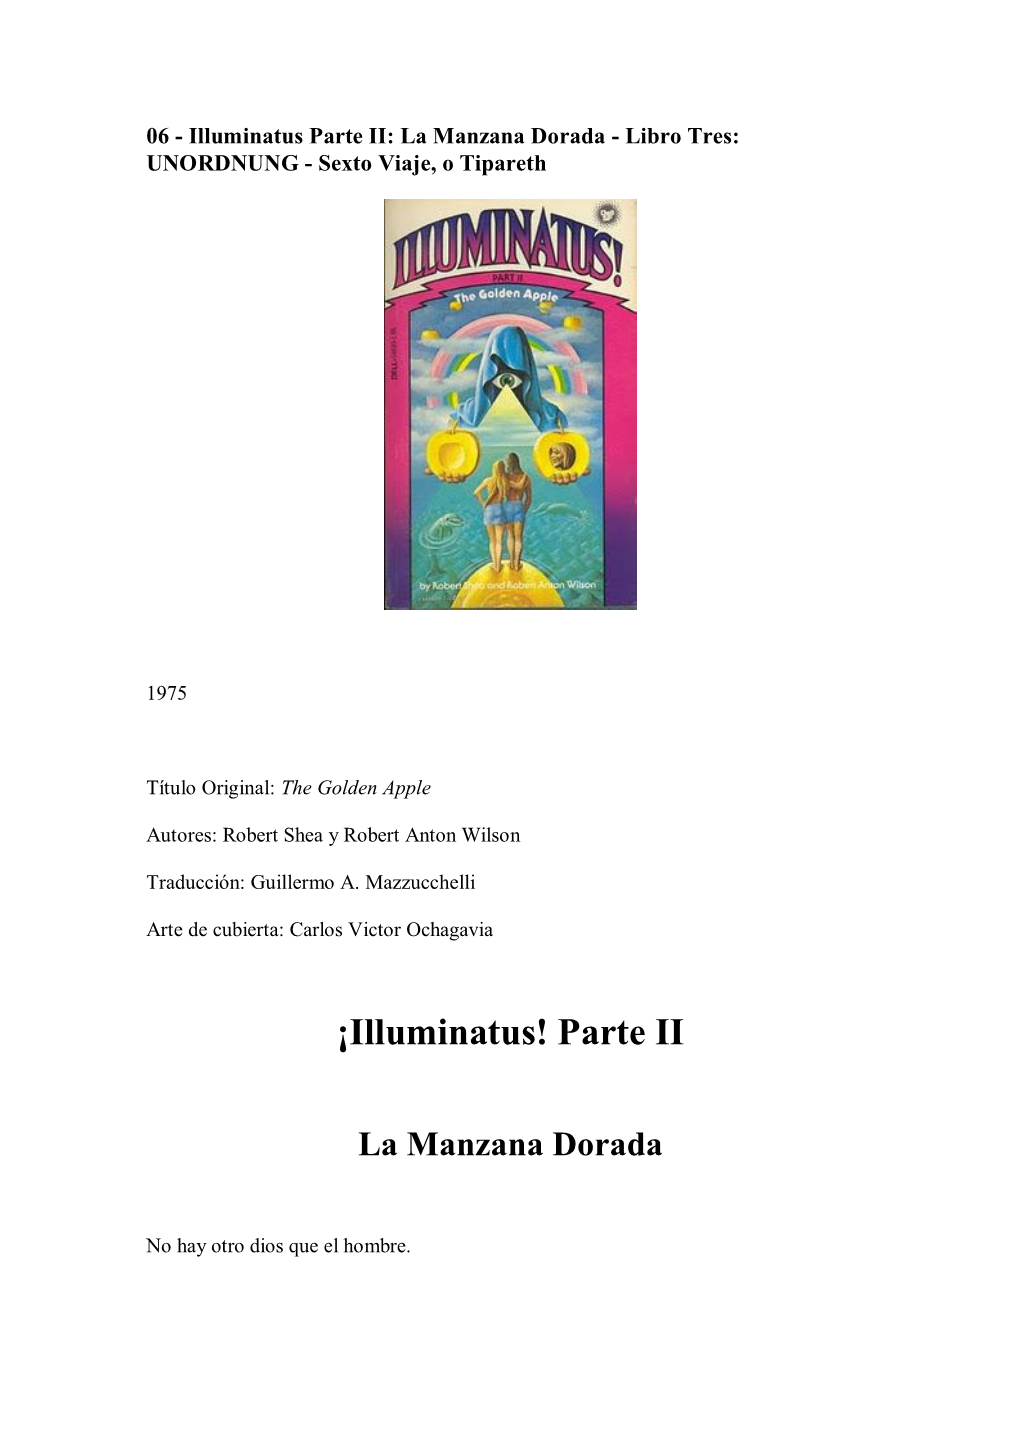 ¡Illuminatus! Parte II